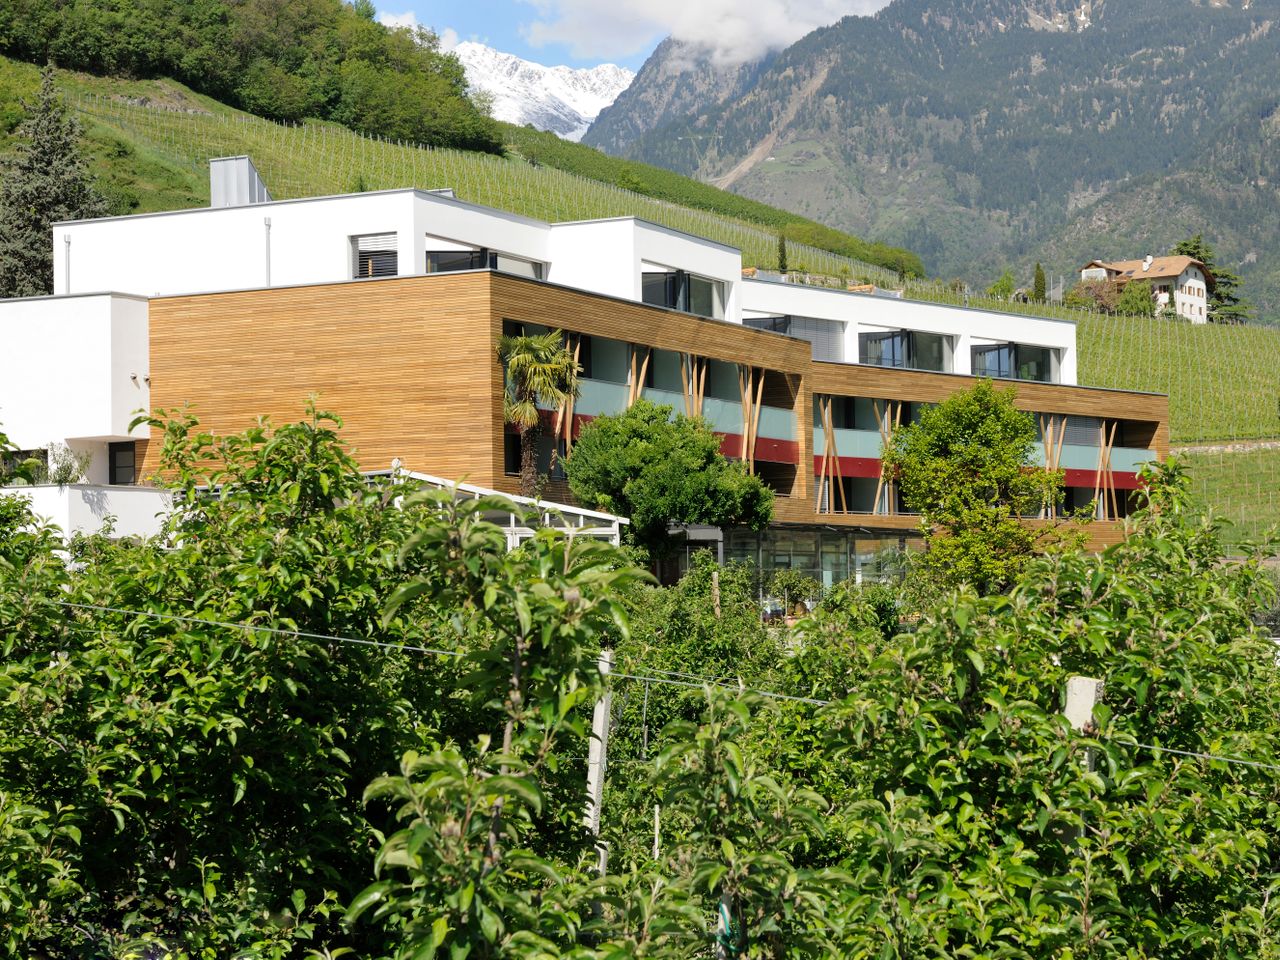 4 Tage Biken, genießen und entspannen in Südtirol